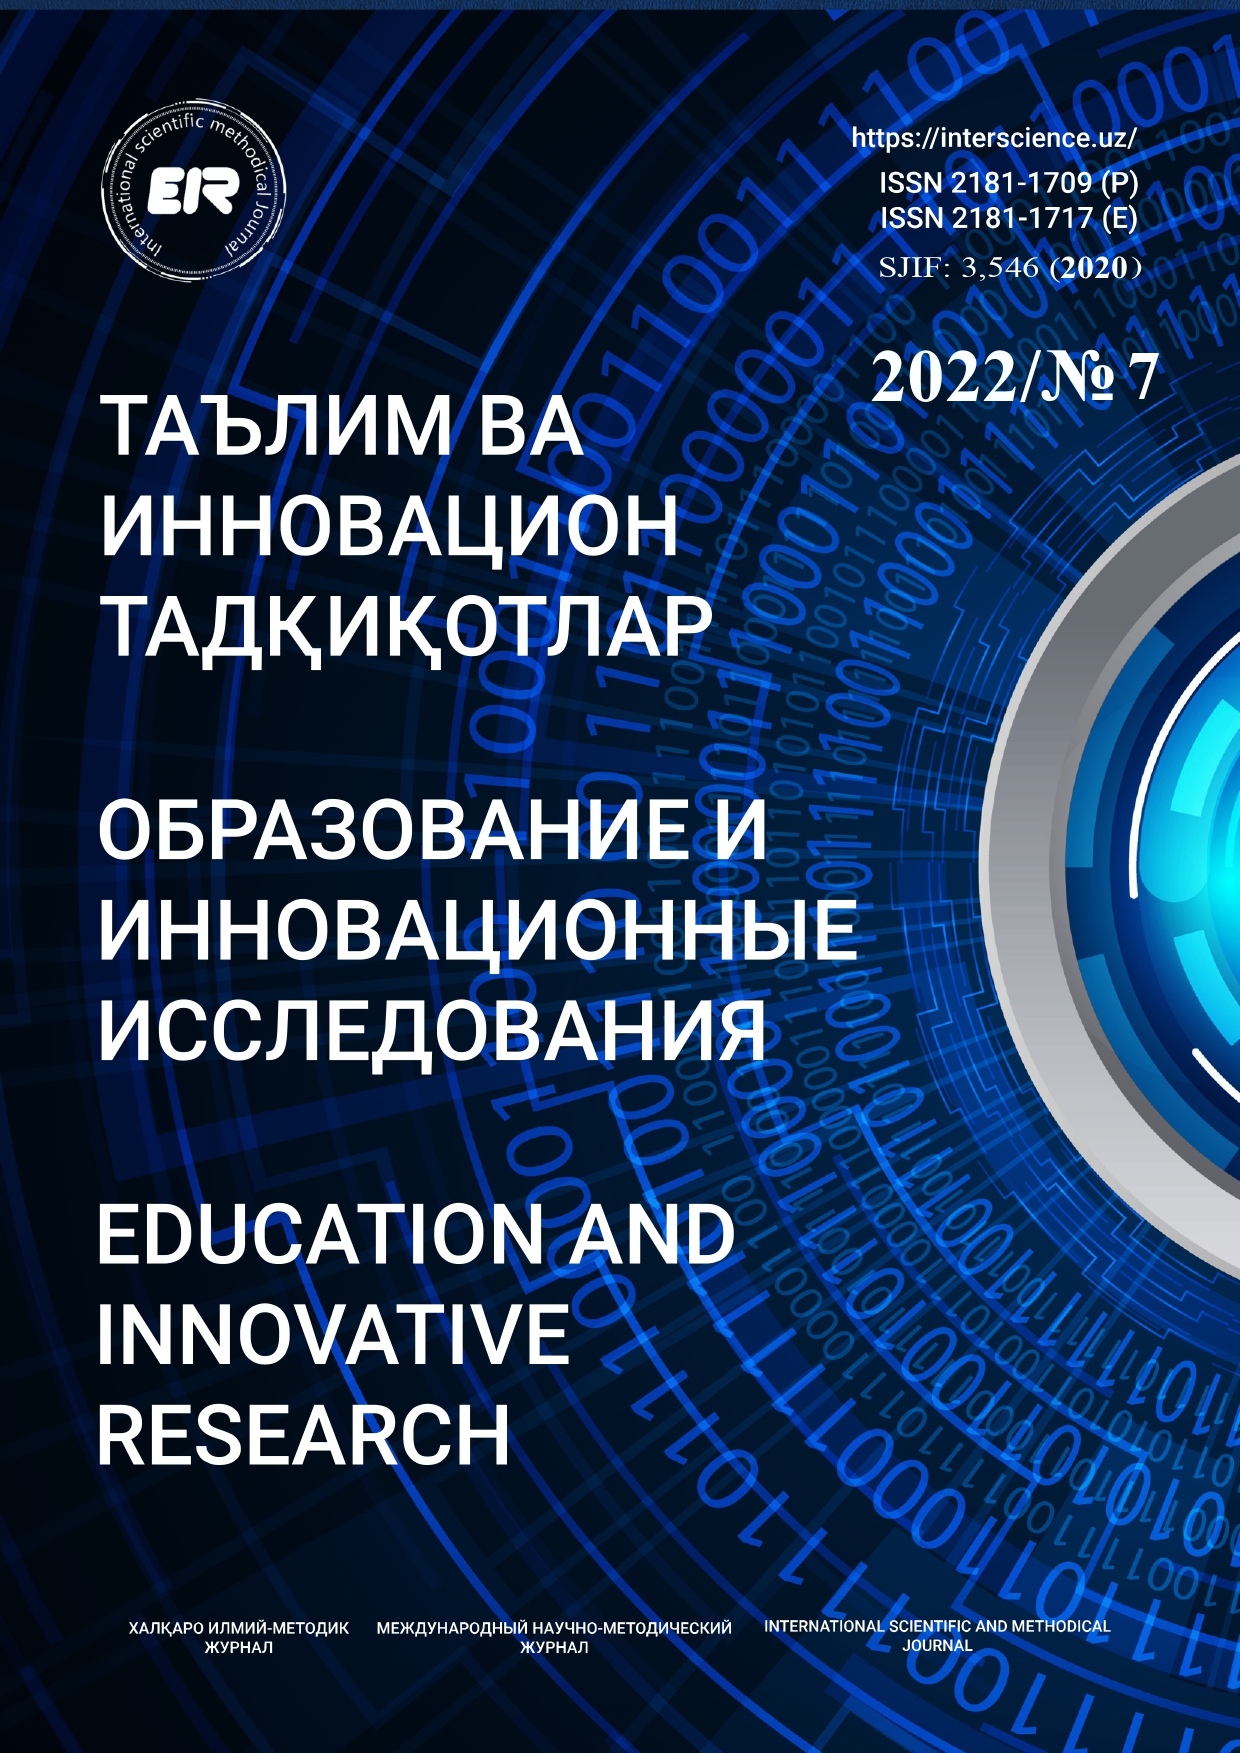 					Показать № 7 (2022): Образование и инновационные исследования
				